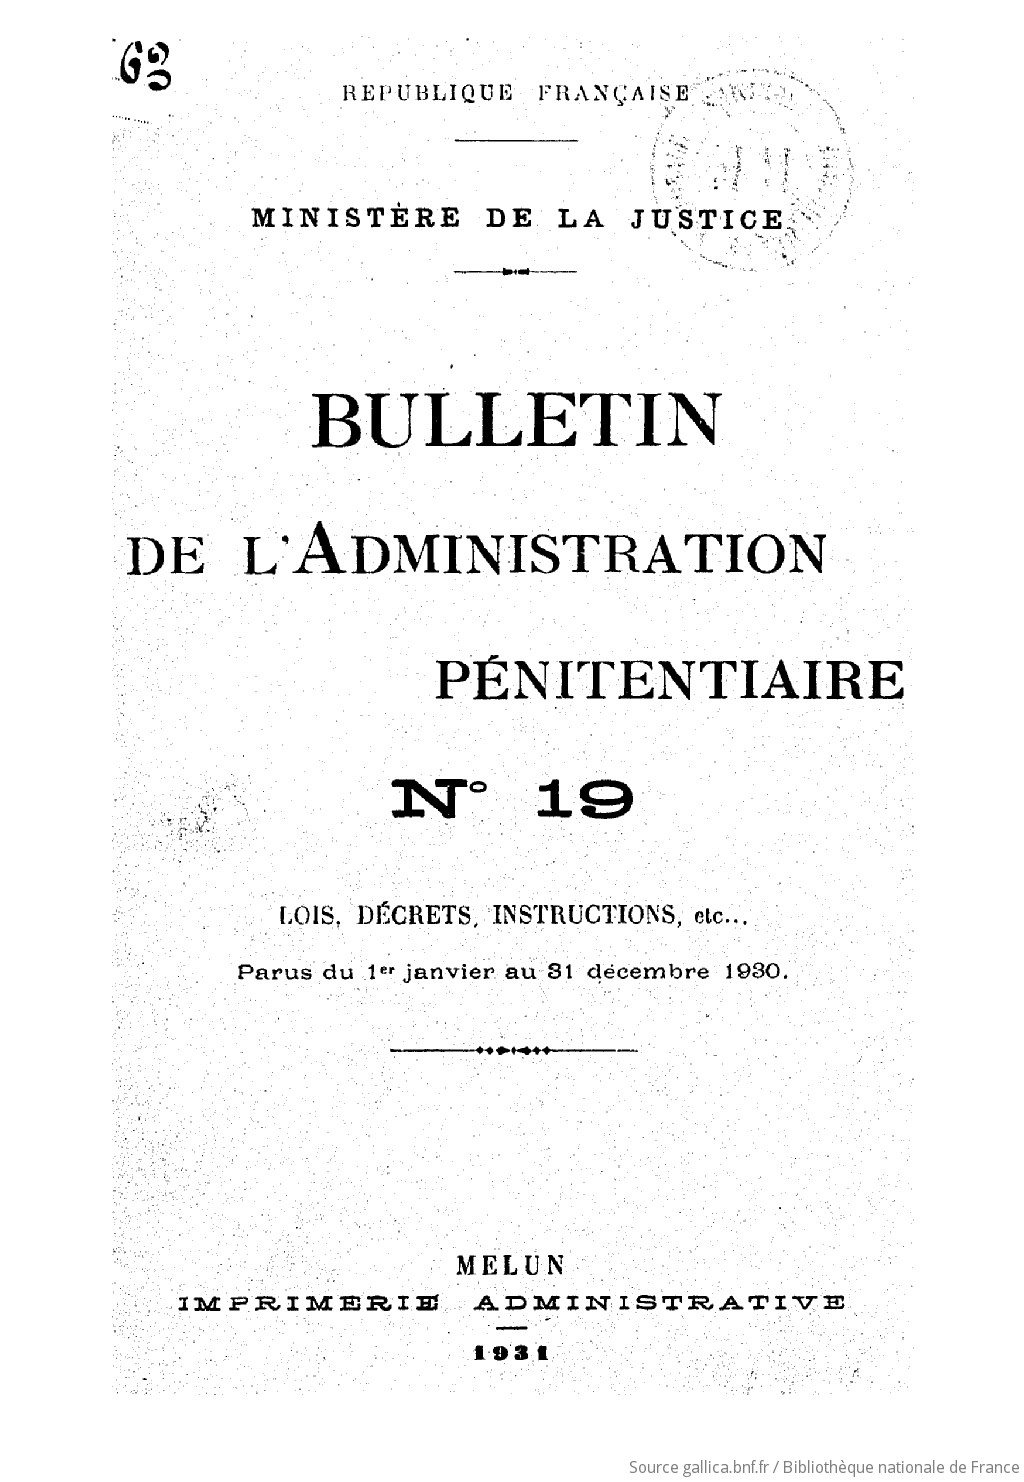 Bulletin de l'Administration pénitentiaire : lois, décrets, instructions, etc. / République française, Ministère de la justice